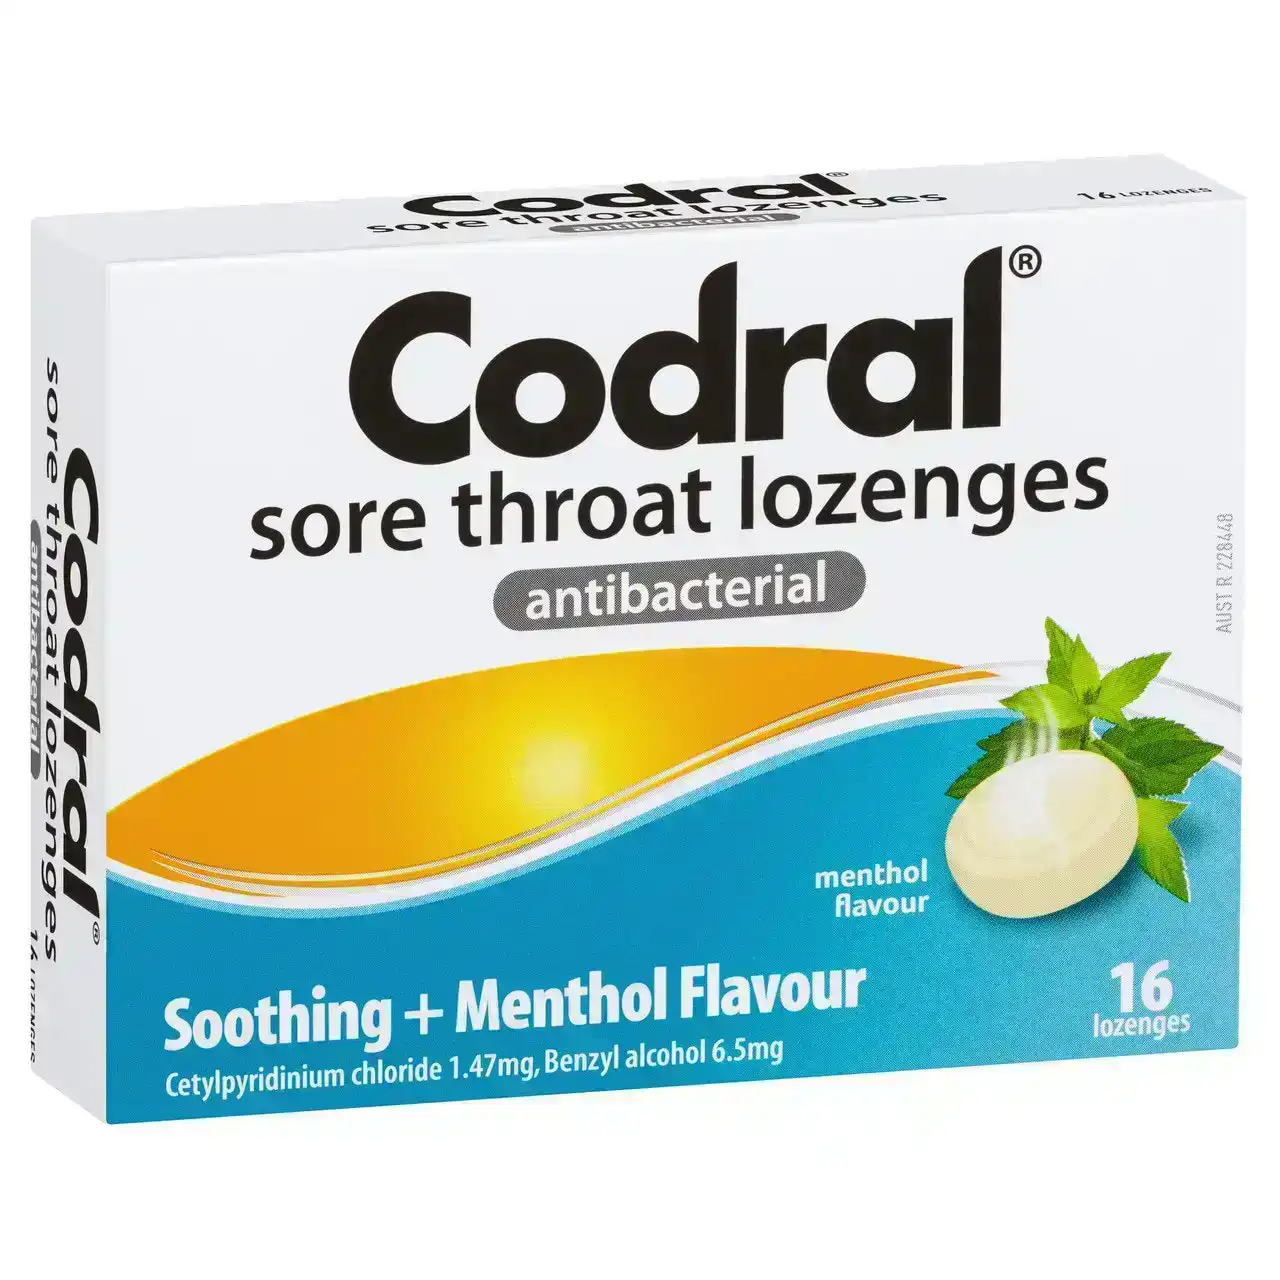 CODRAL Sore Throat Relief Lozenges Antibacterial Menthol 16 Pack